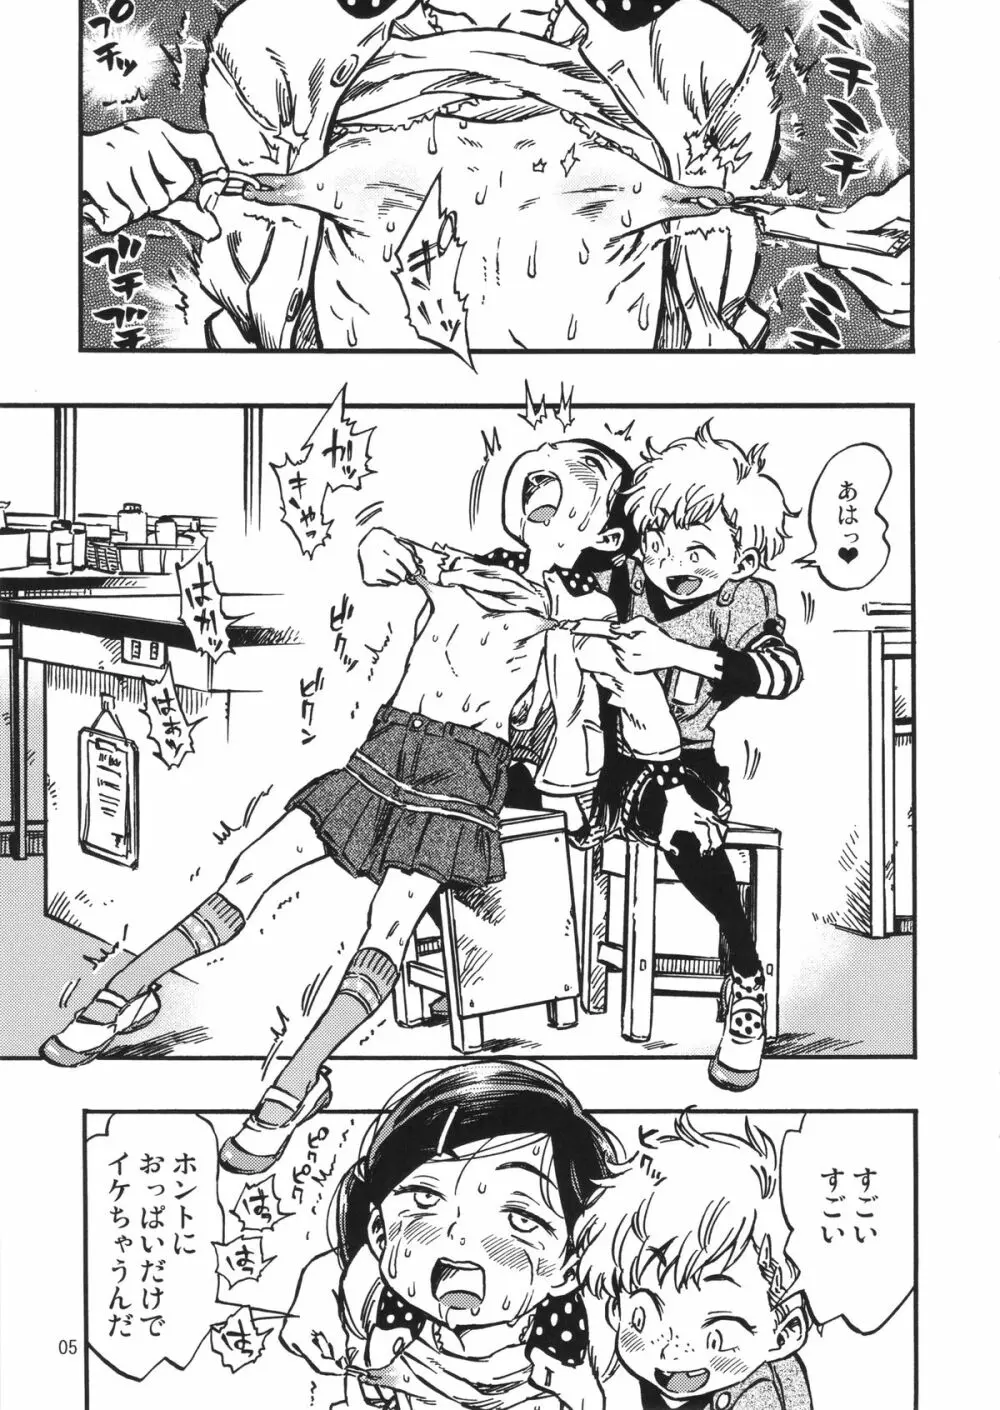 ゲロ子ちゃんとチクビ子ちゃん - page4